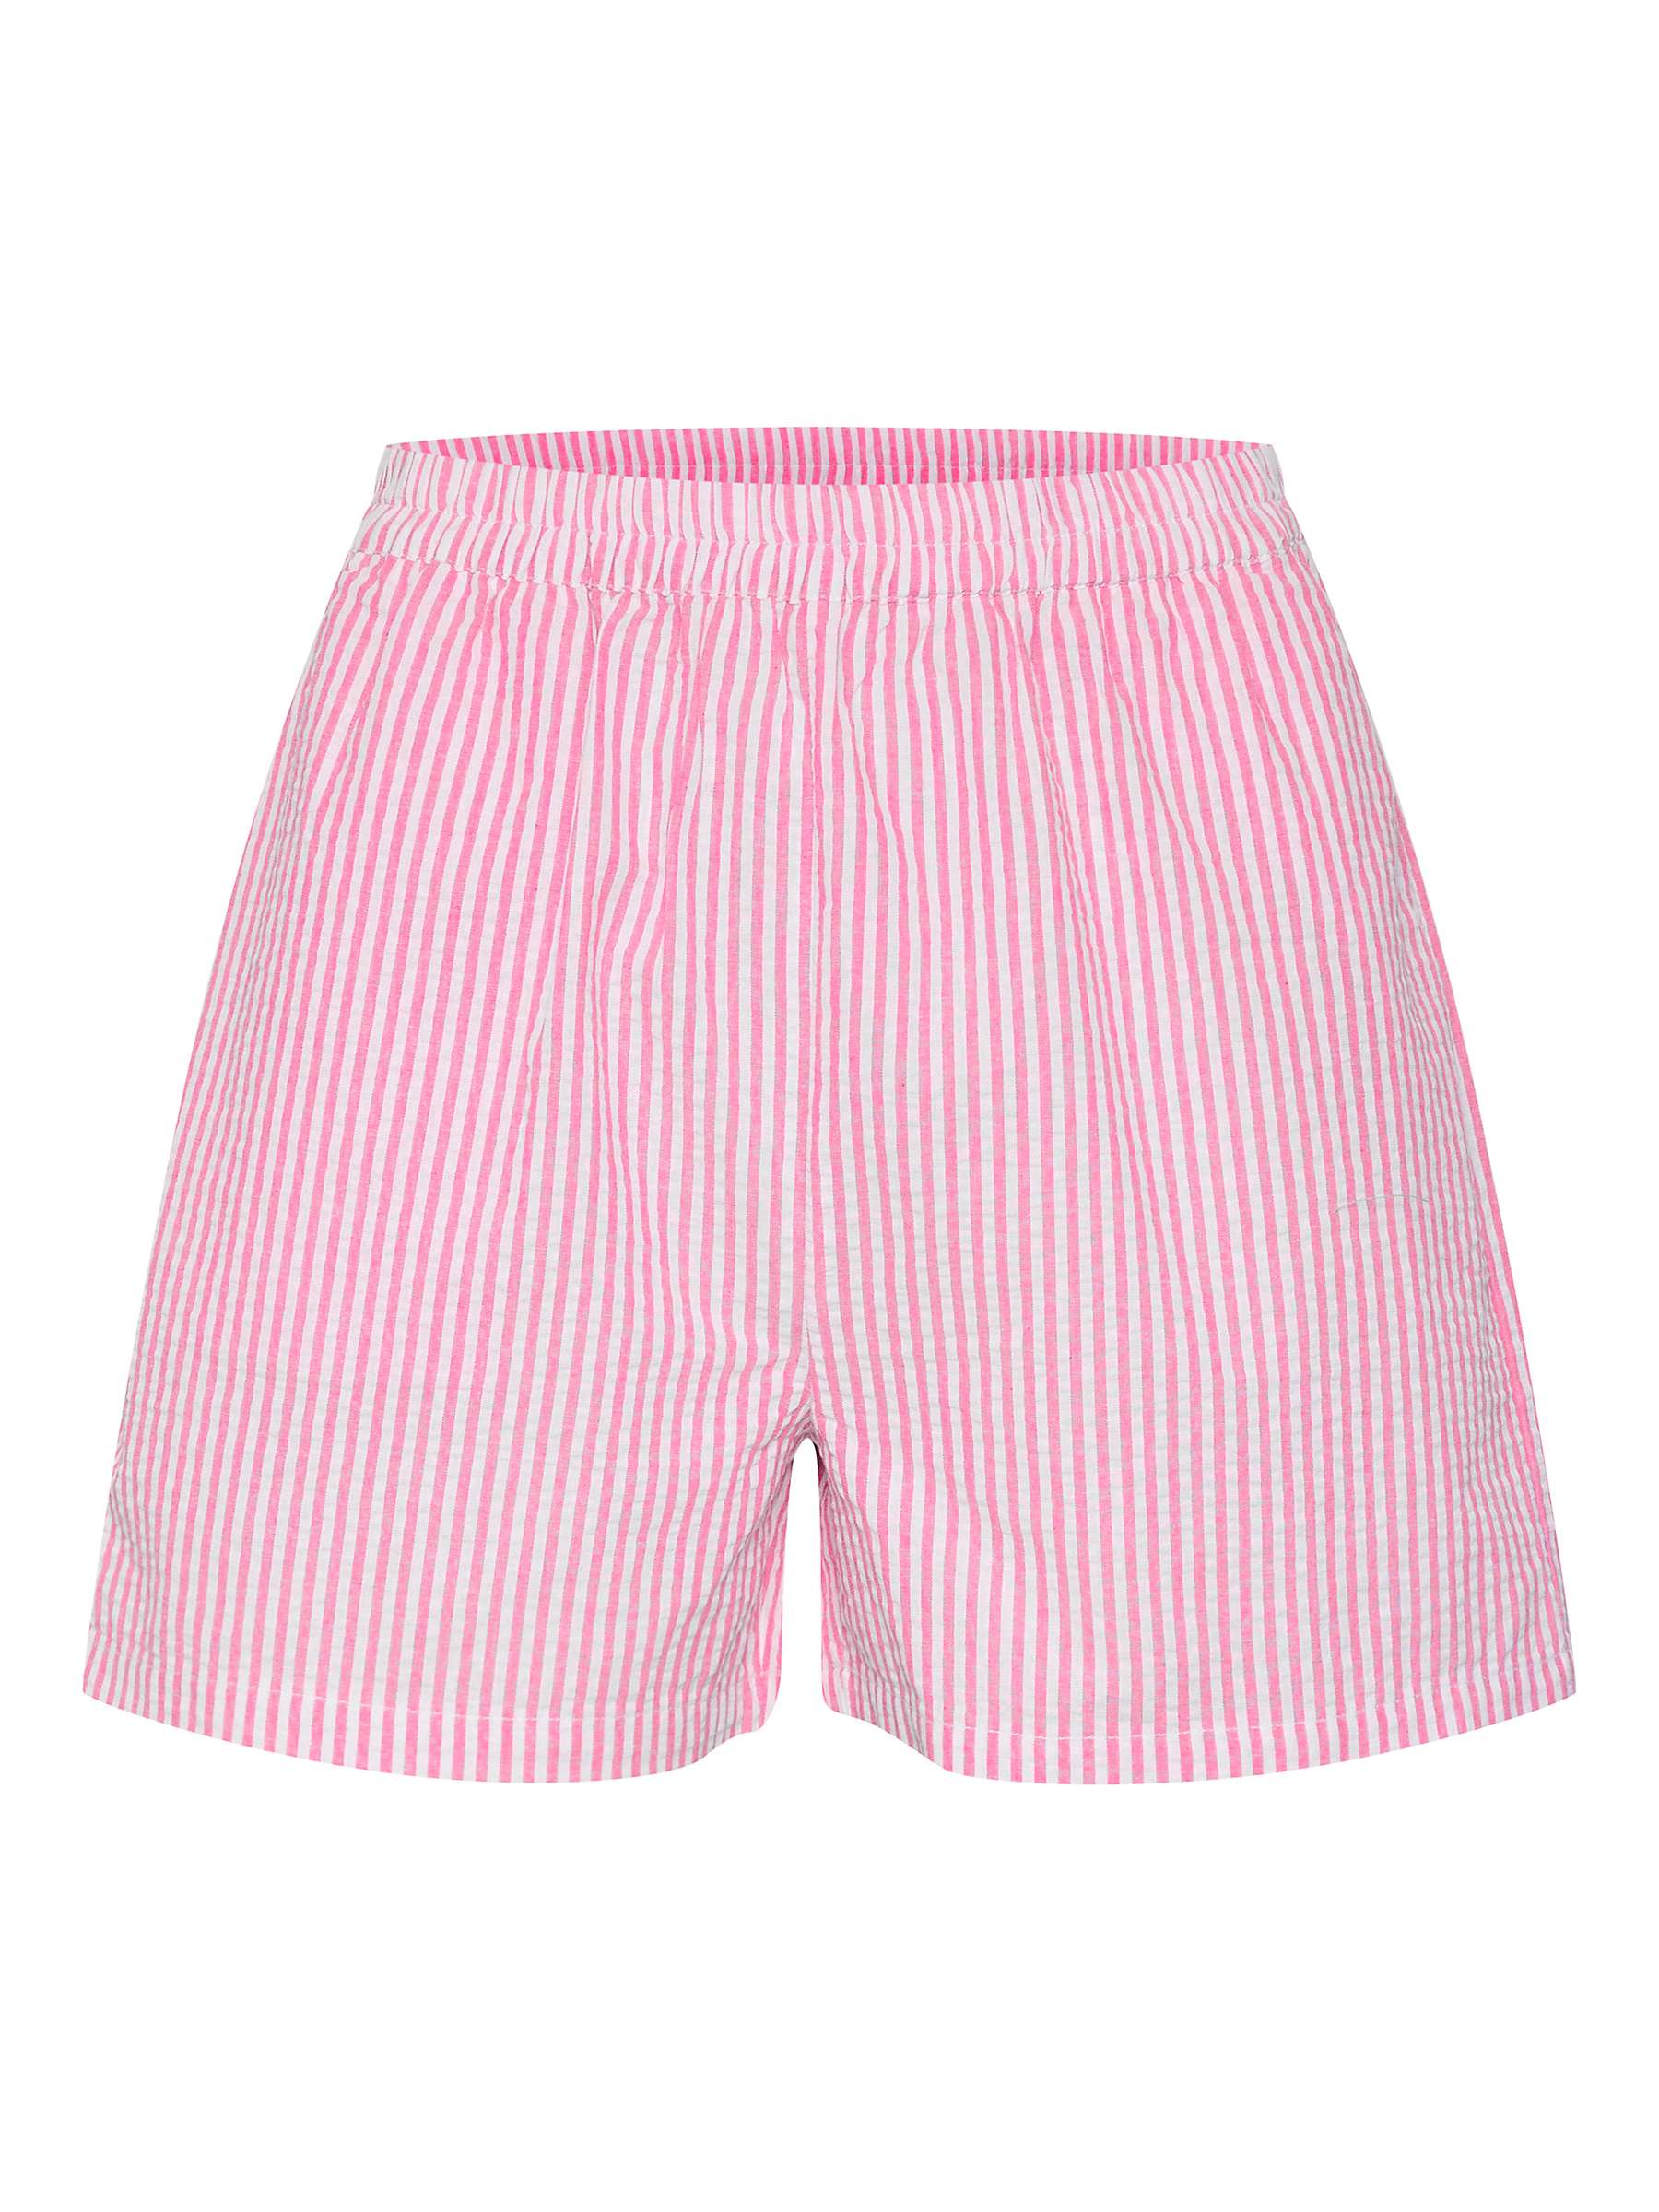 Buy Saint Tropez Elmiko Stripe Shorts Online at johnlewis.com